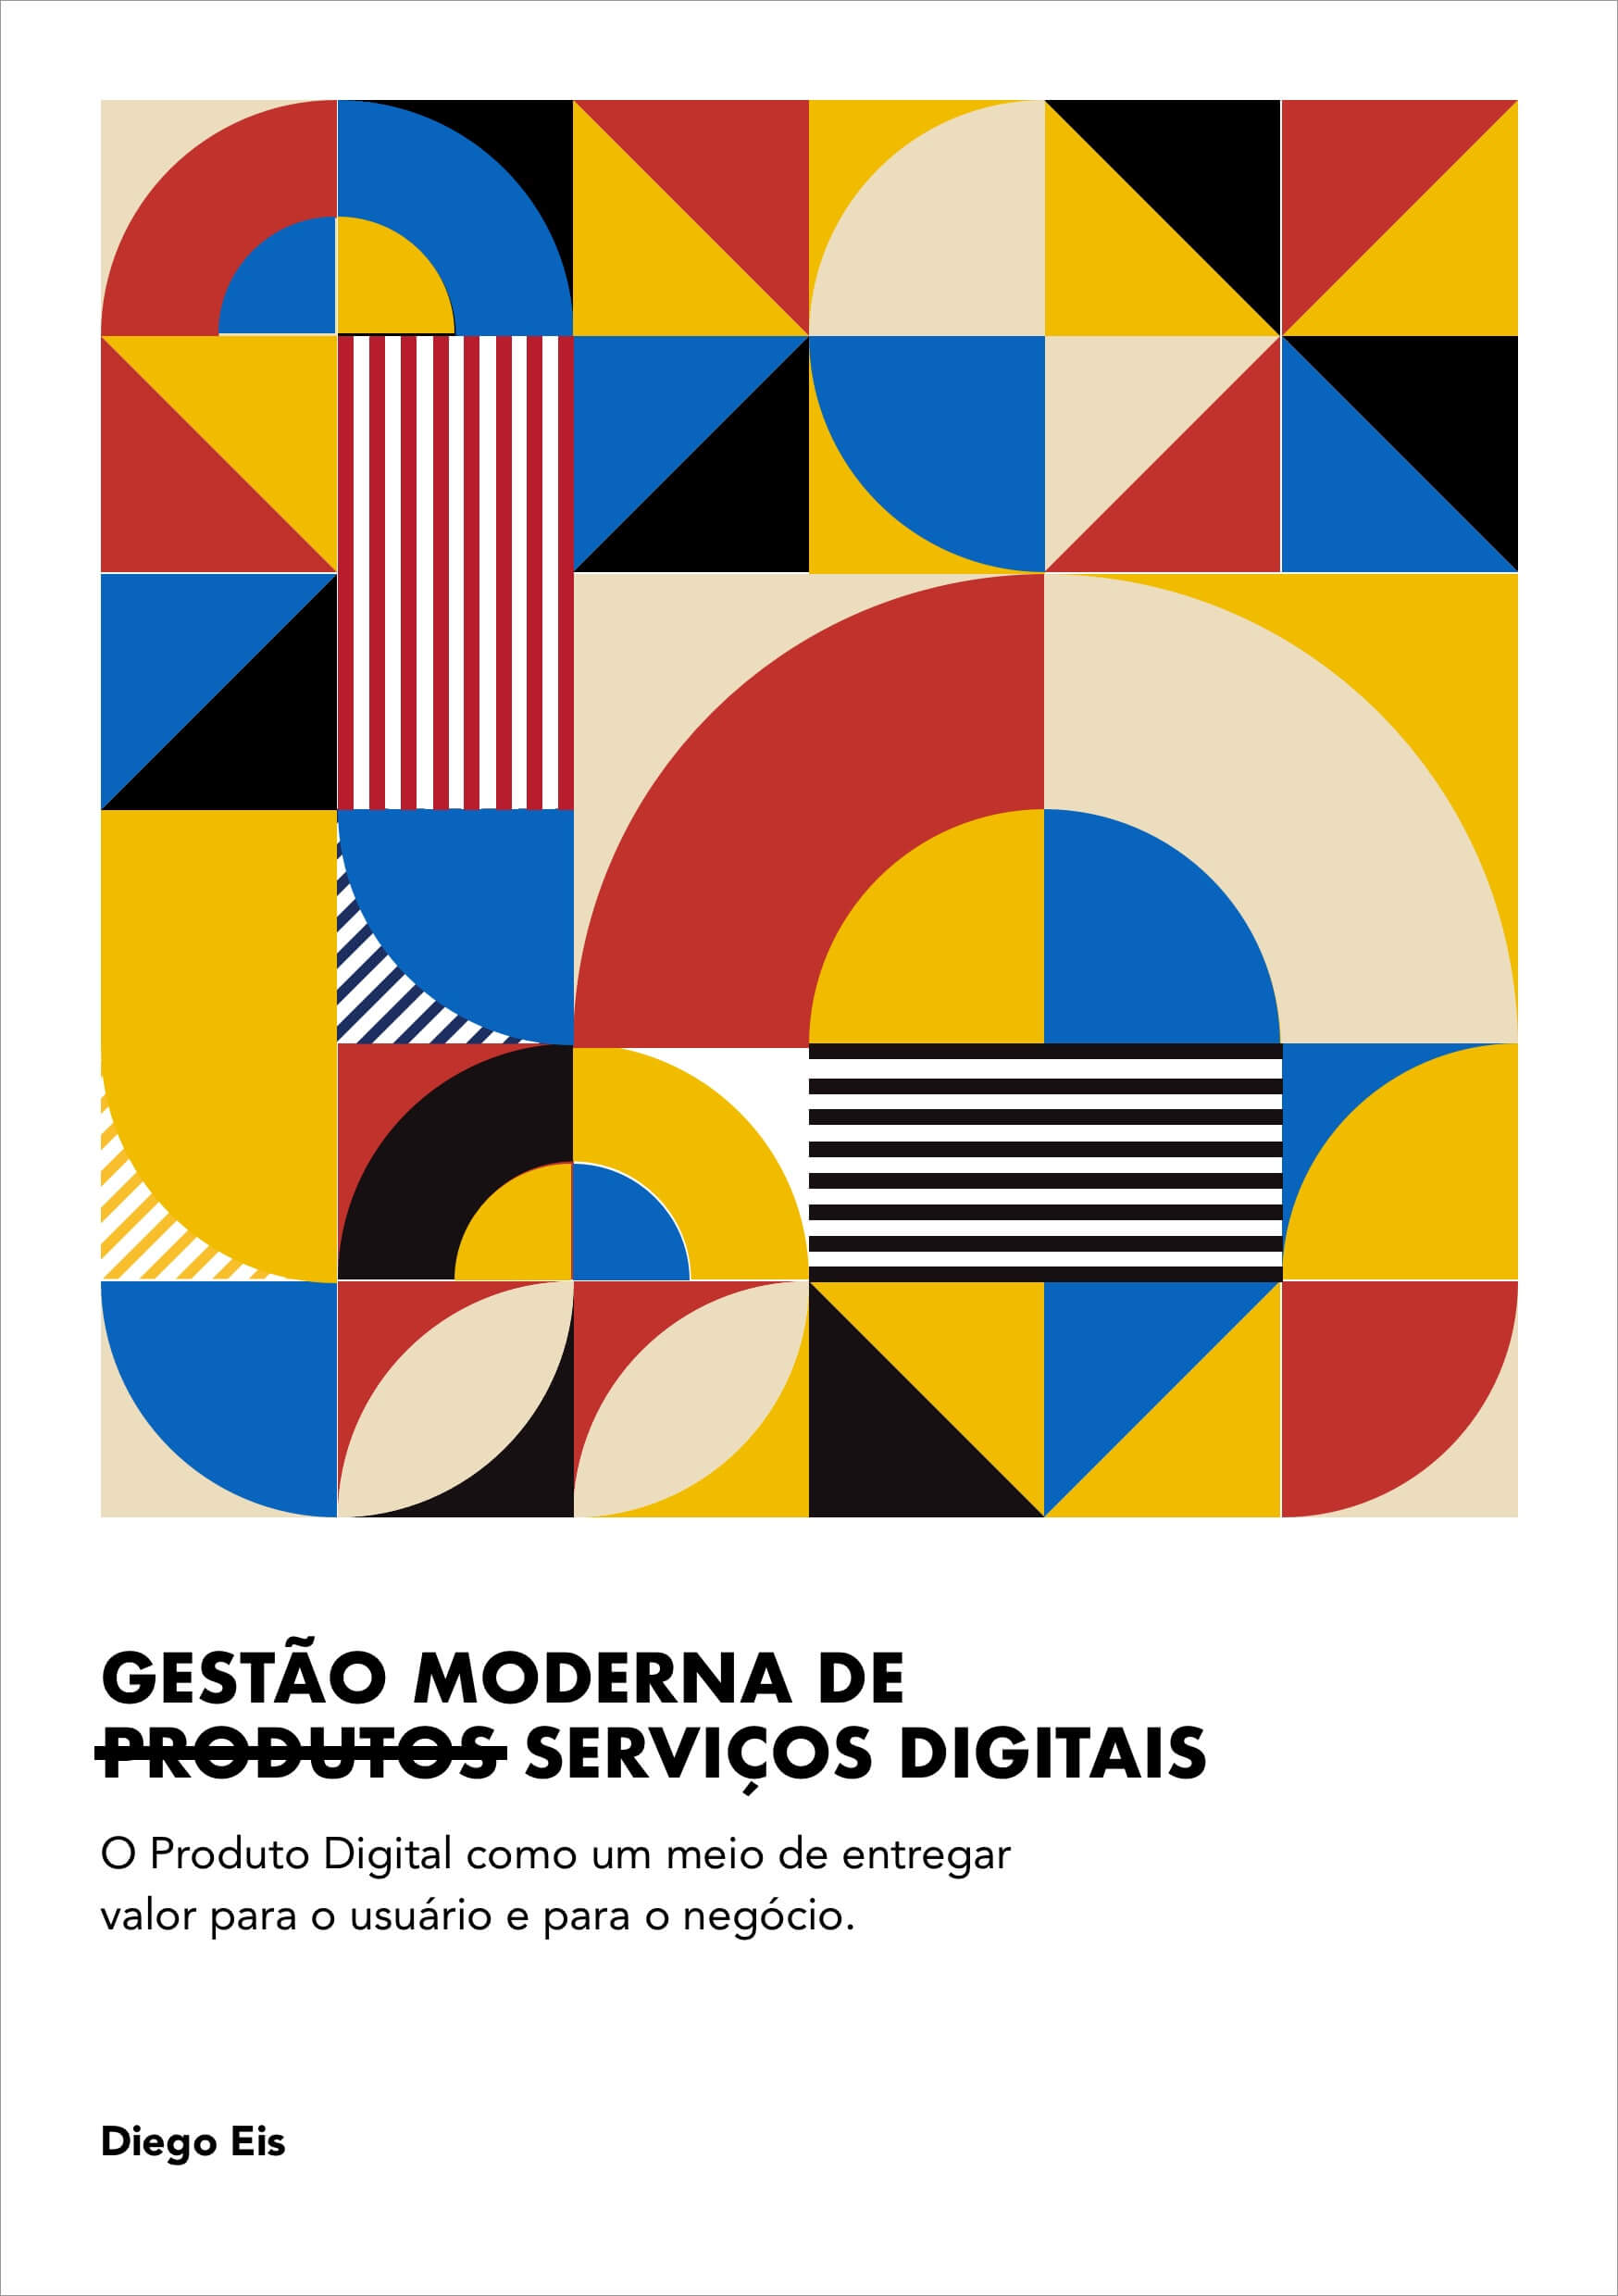 capa do livro Gestão Moderna de Produtos Digitais - imagem ilustrando a jornada de usuário